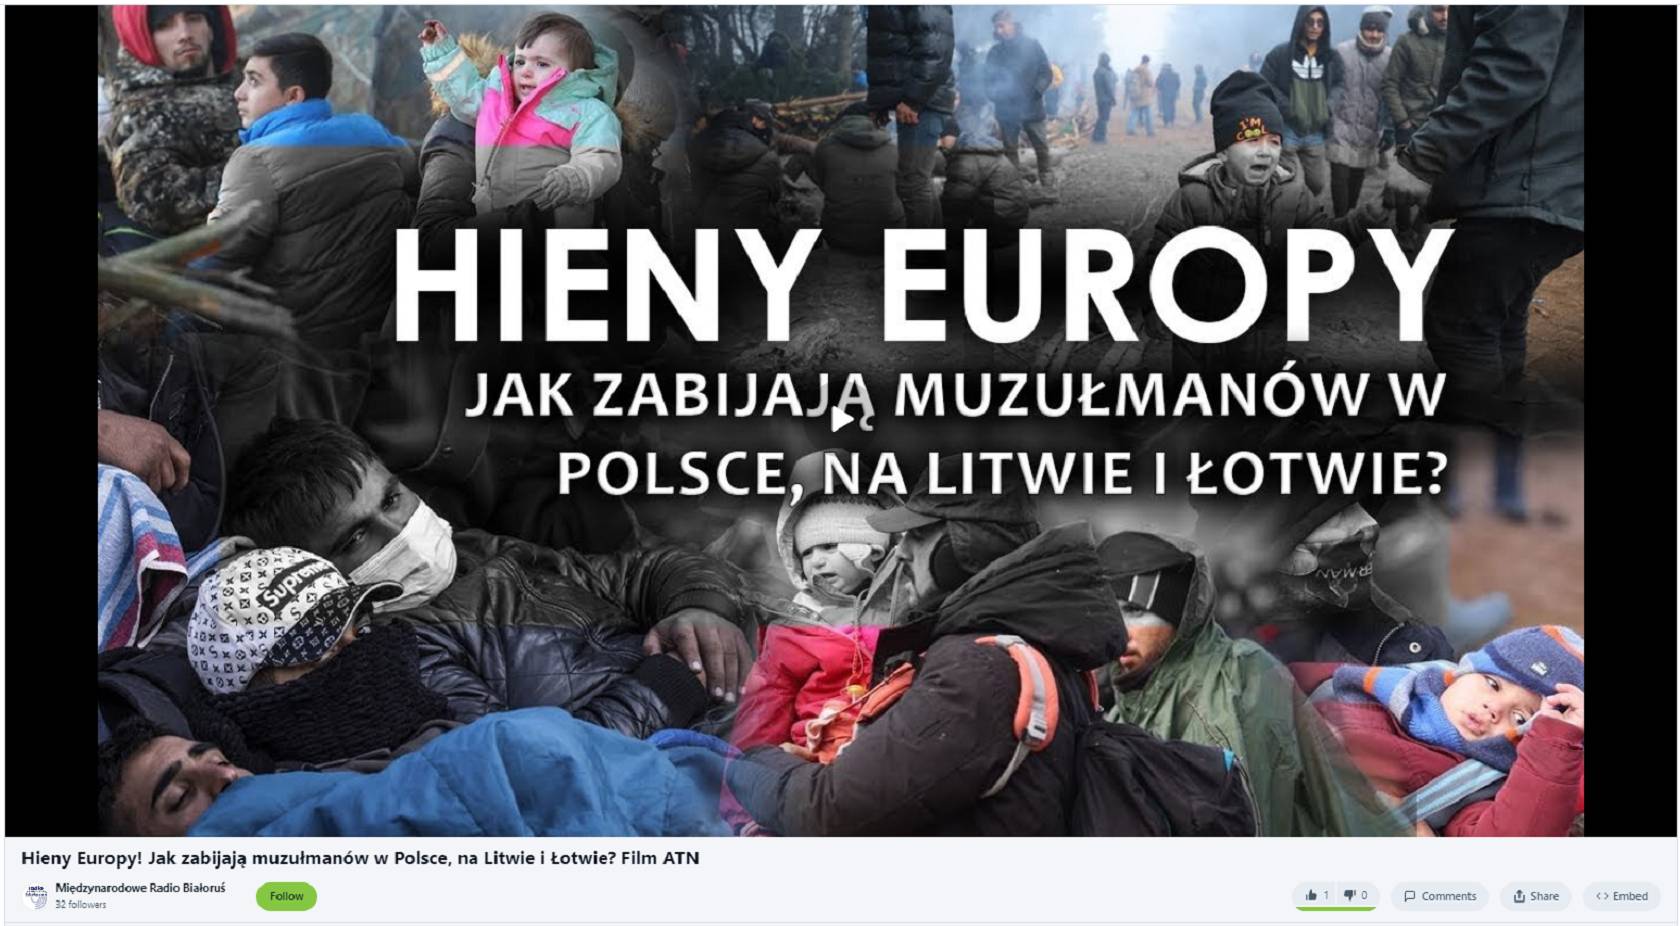 Czołówkowy kadr jednego z materiałów, zamieszczonych przez Radio Białoruś, z napisem "Hieny Europy. Jak zabijają muzułmanów w Polsce, na Litwie i na Łotwie". W tle zdjęcie uchodźców z dziećmi.